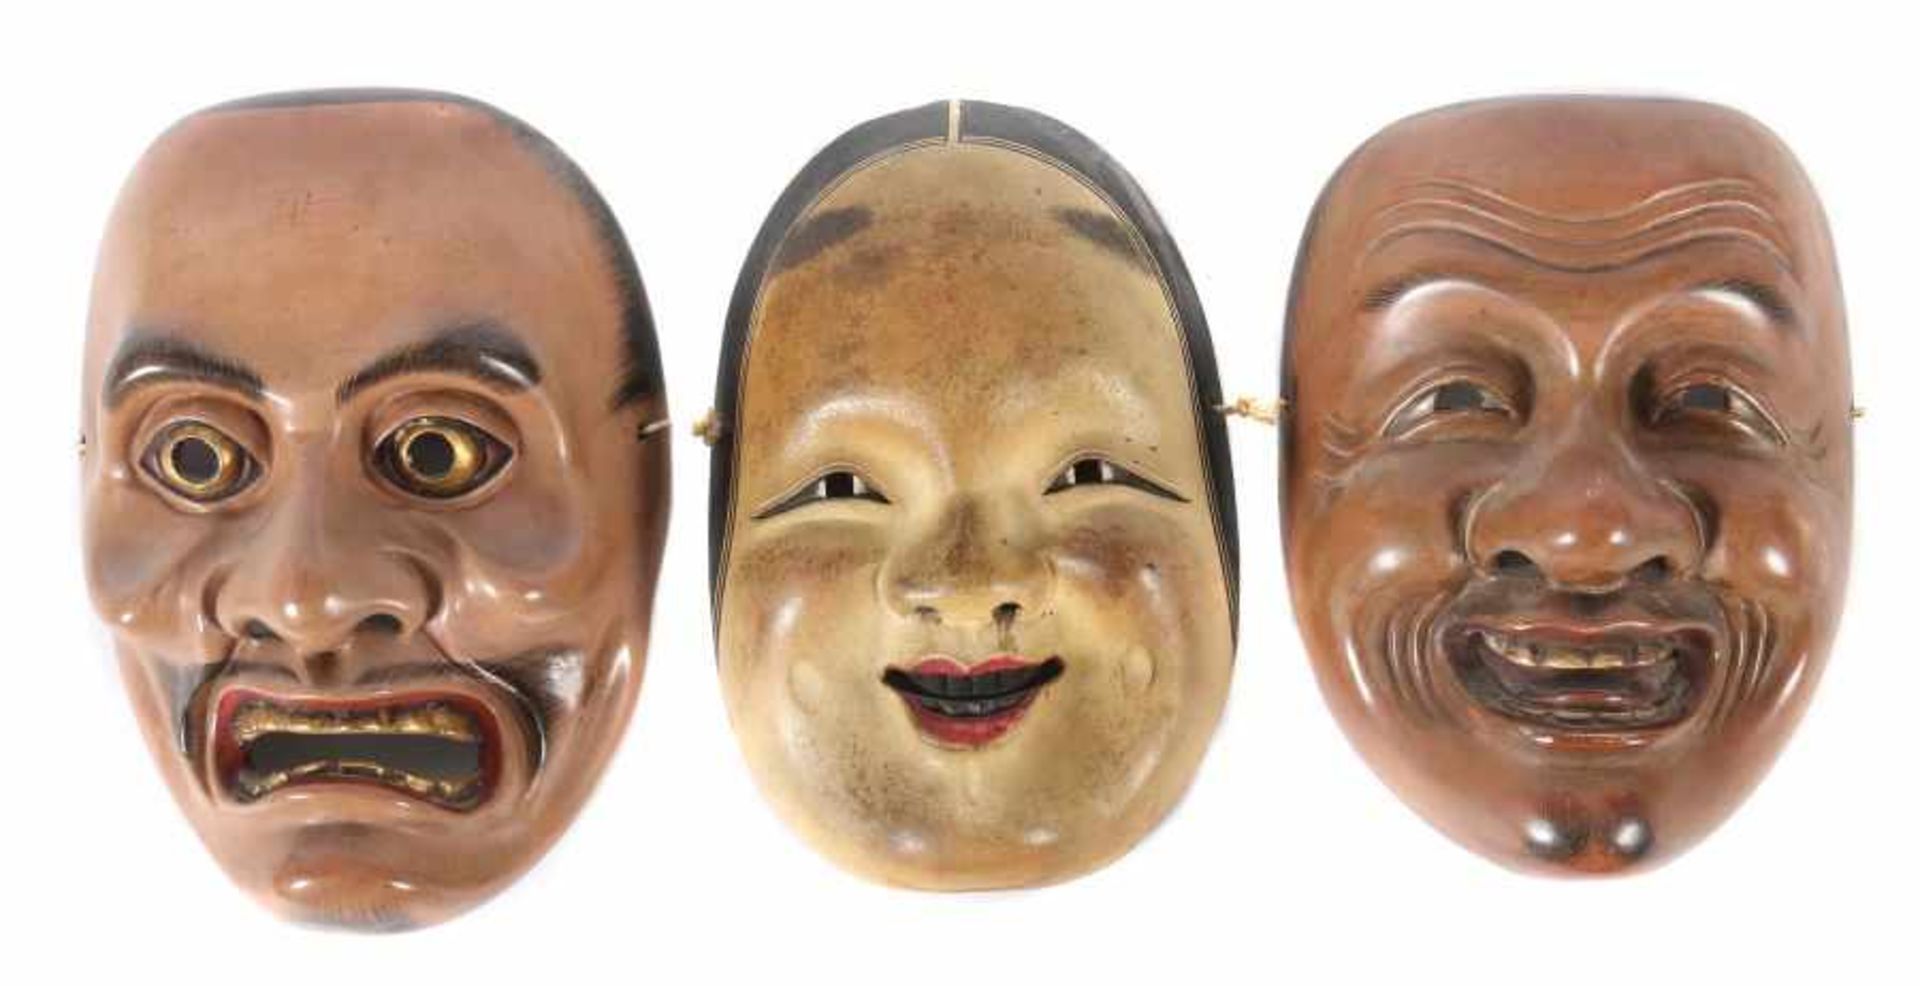 3 Nô-MaskenJapan, 19./20. Jh., Holz/gefasst, 3 Masken des Nô-Theaters, Darstellung von Charakteren,